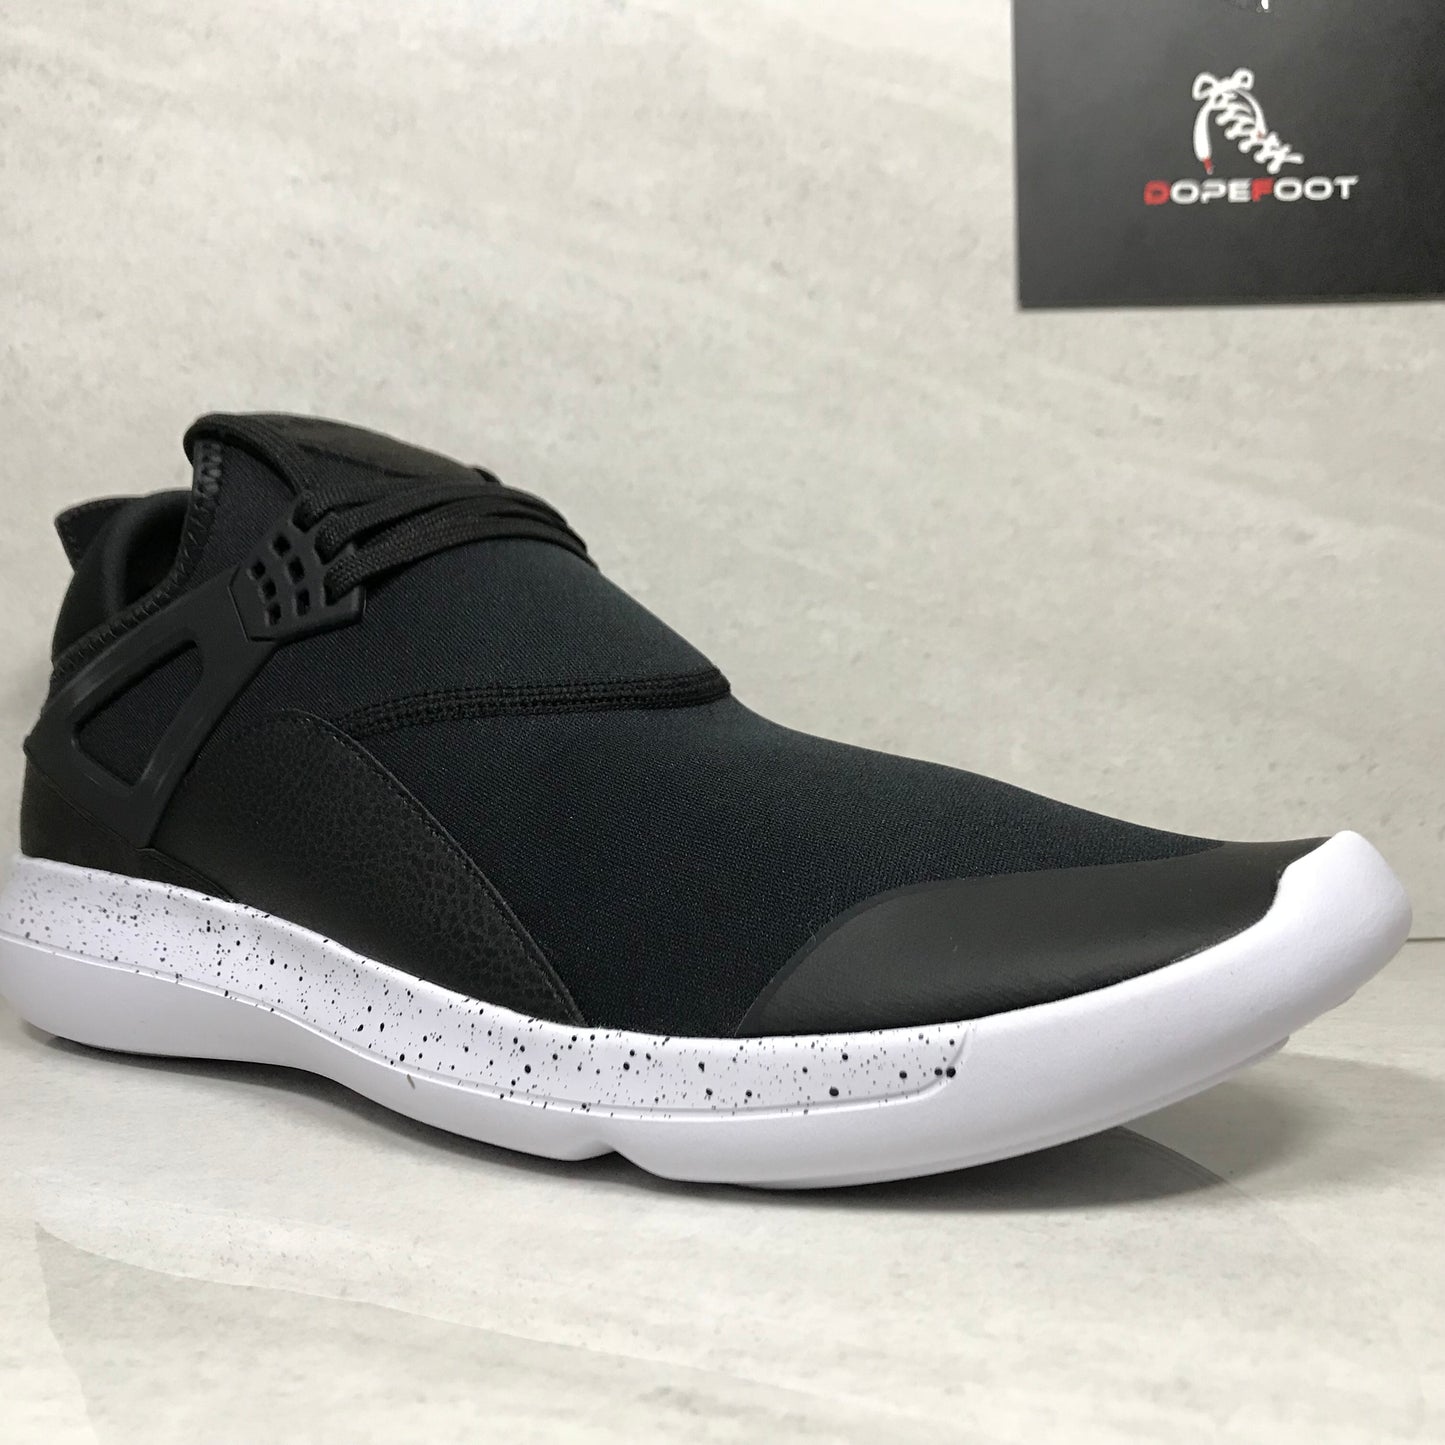 DS Jordan Fly 89 Black/White Size 14